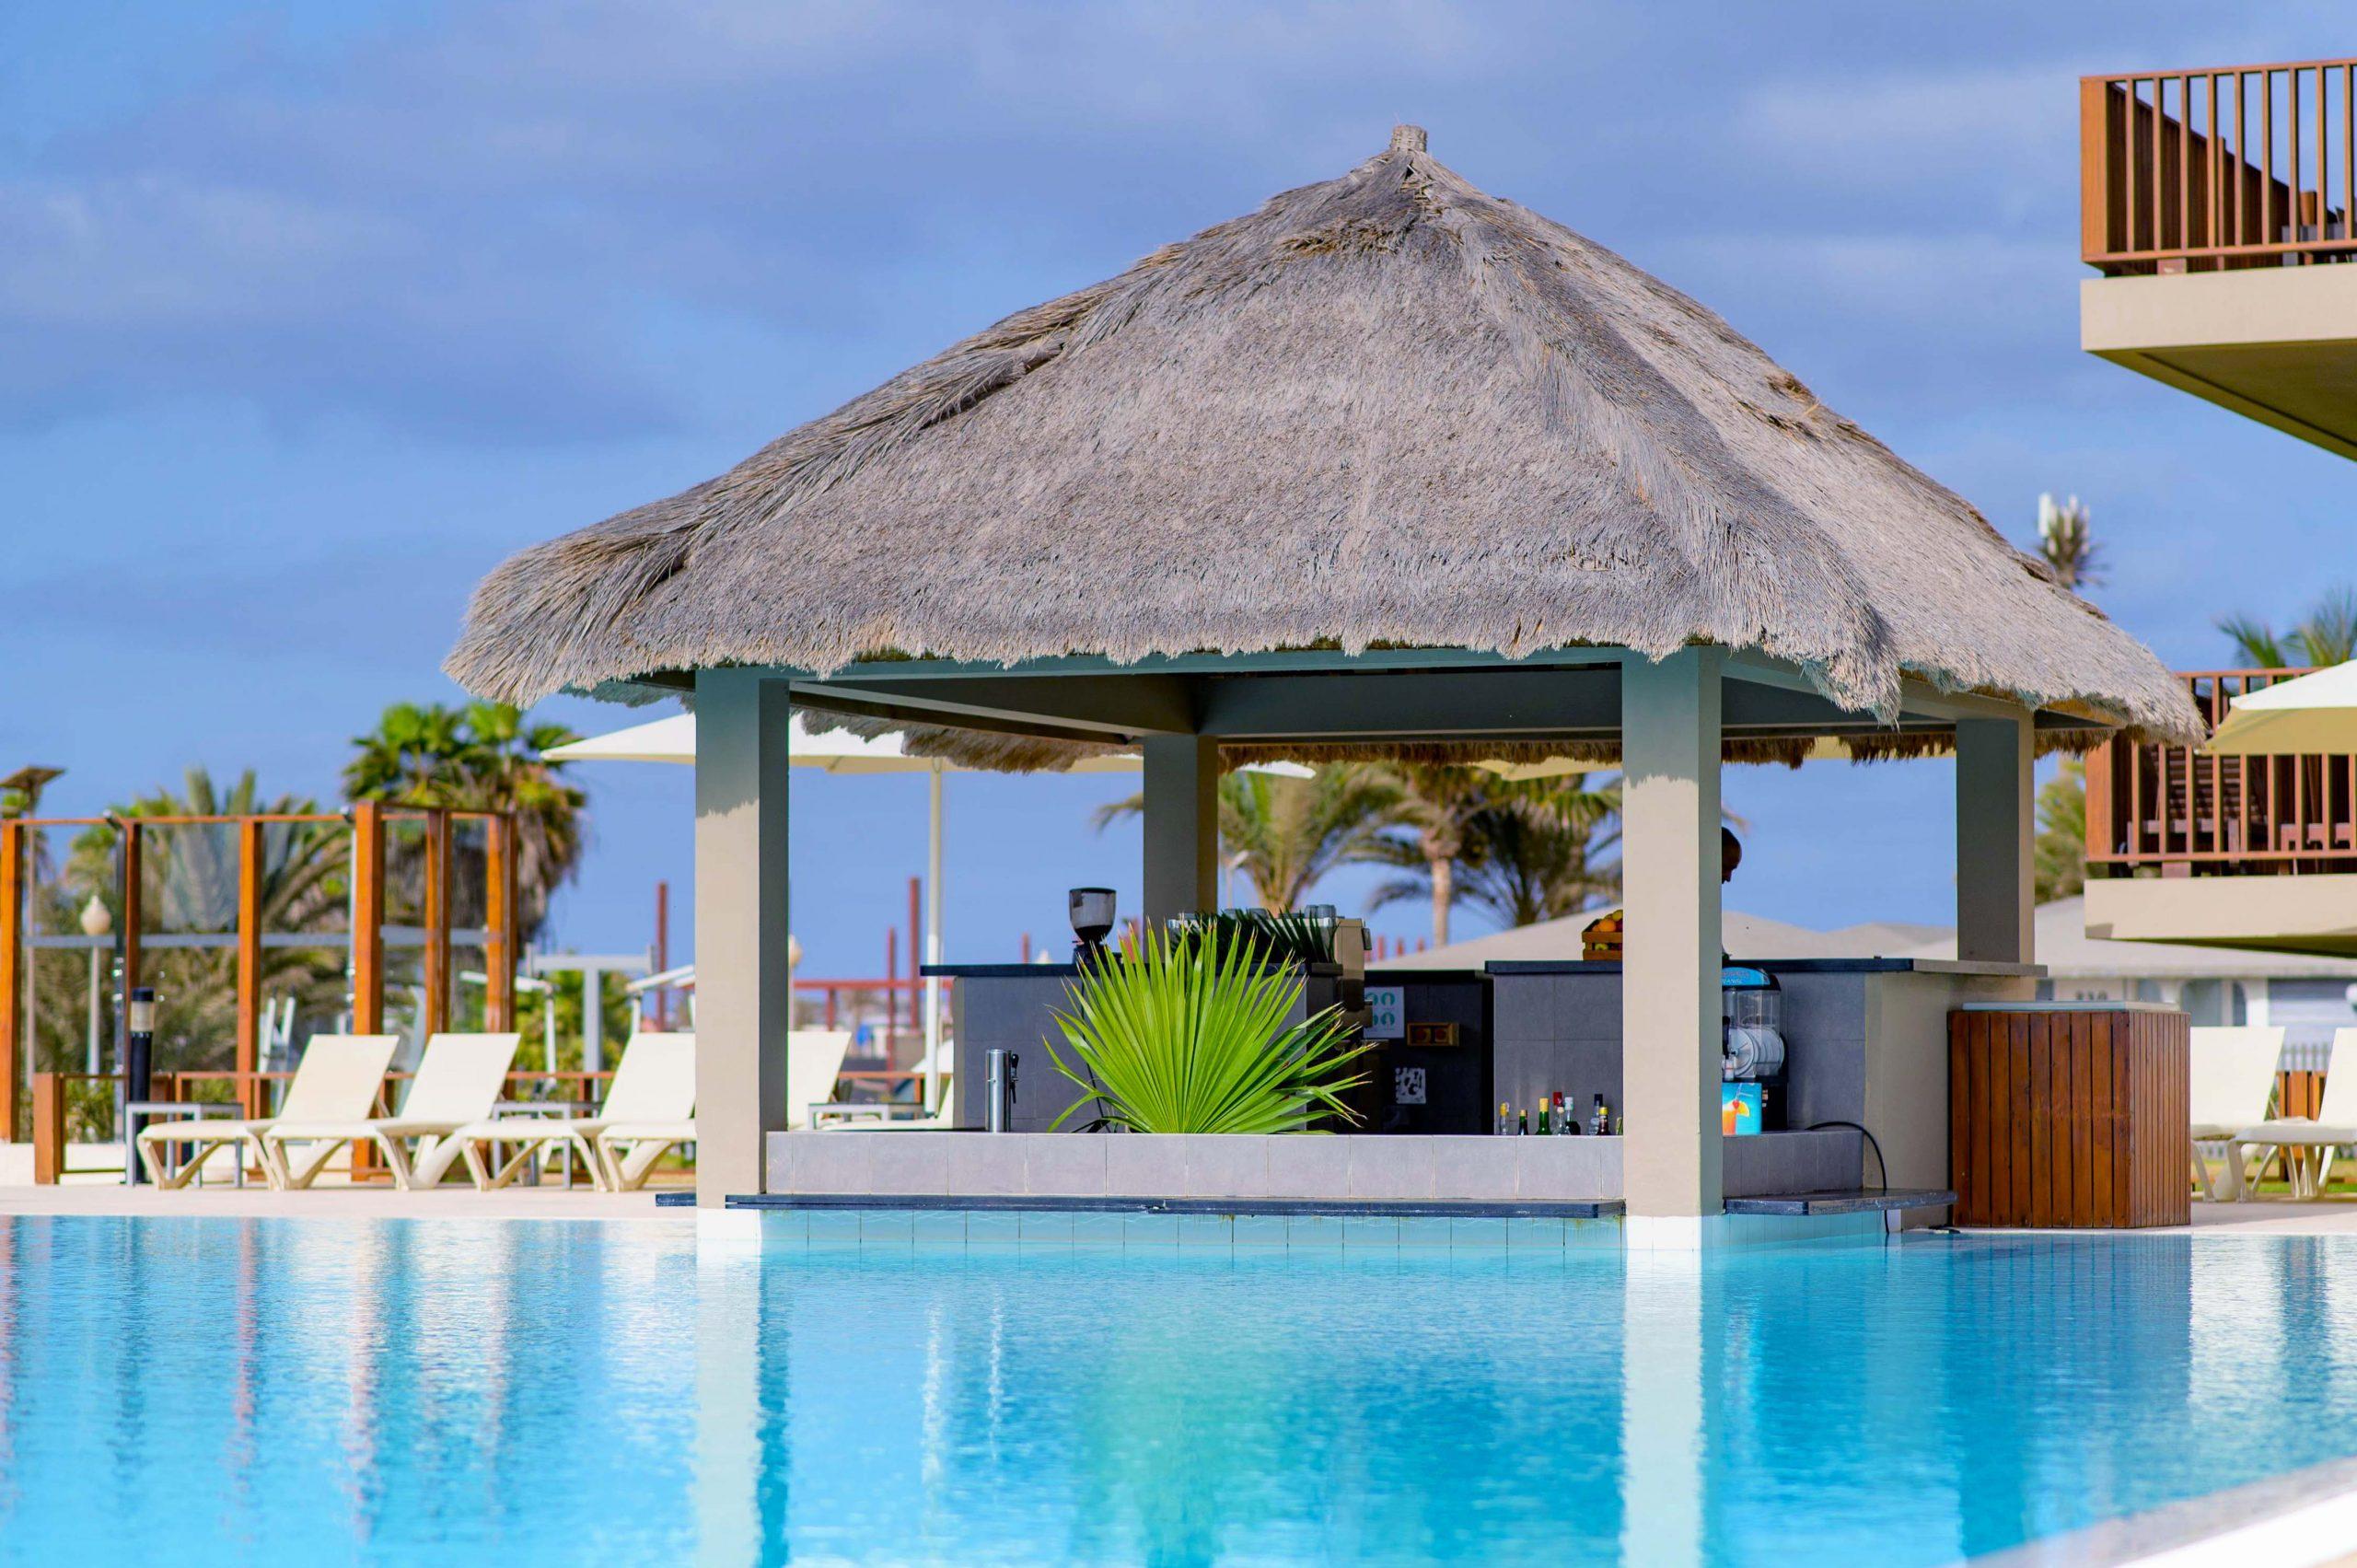 Hotel Oasis Salinas Sea in Santa Maria, Cape Verde $104: Deals, | momondo